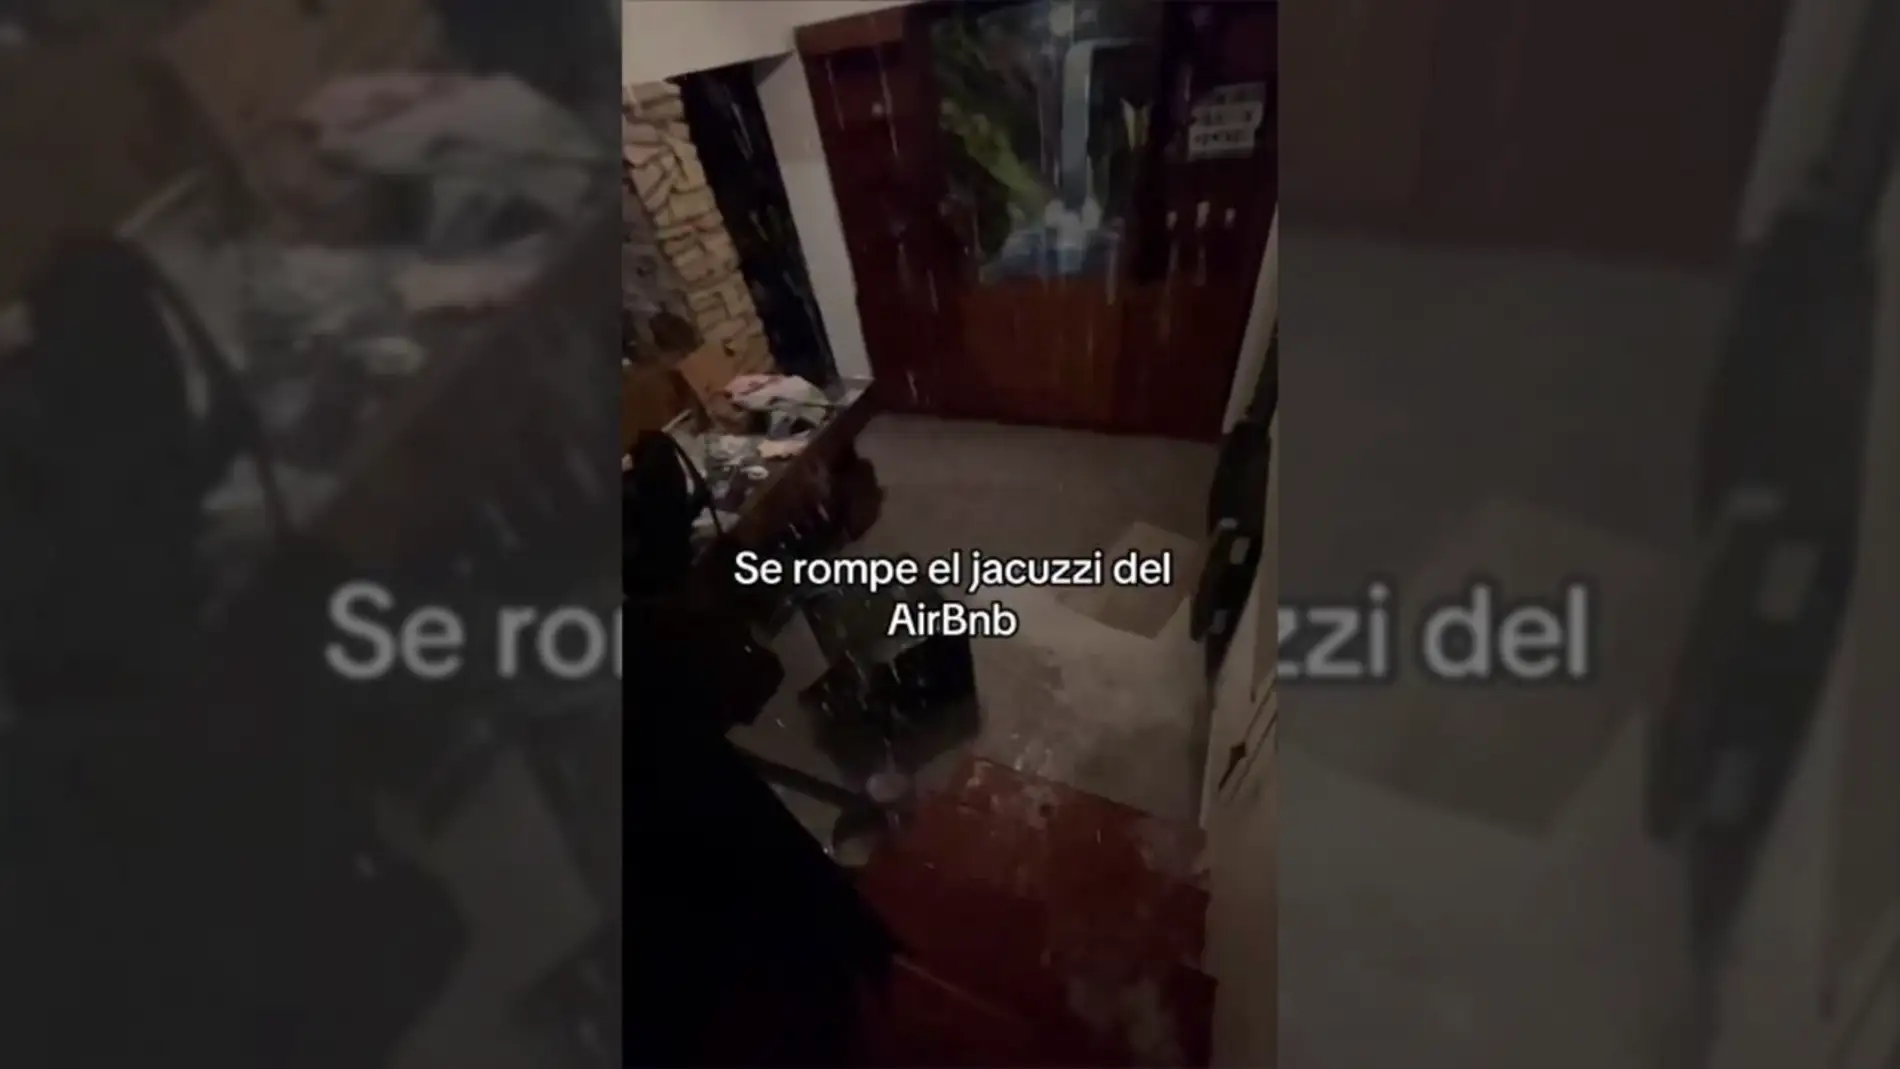 Unos jóvenes rompen el jacuzzi de un Airbnb y se hacen virales en TikTok: "Se está inundando la casa"